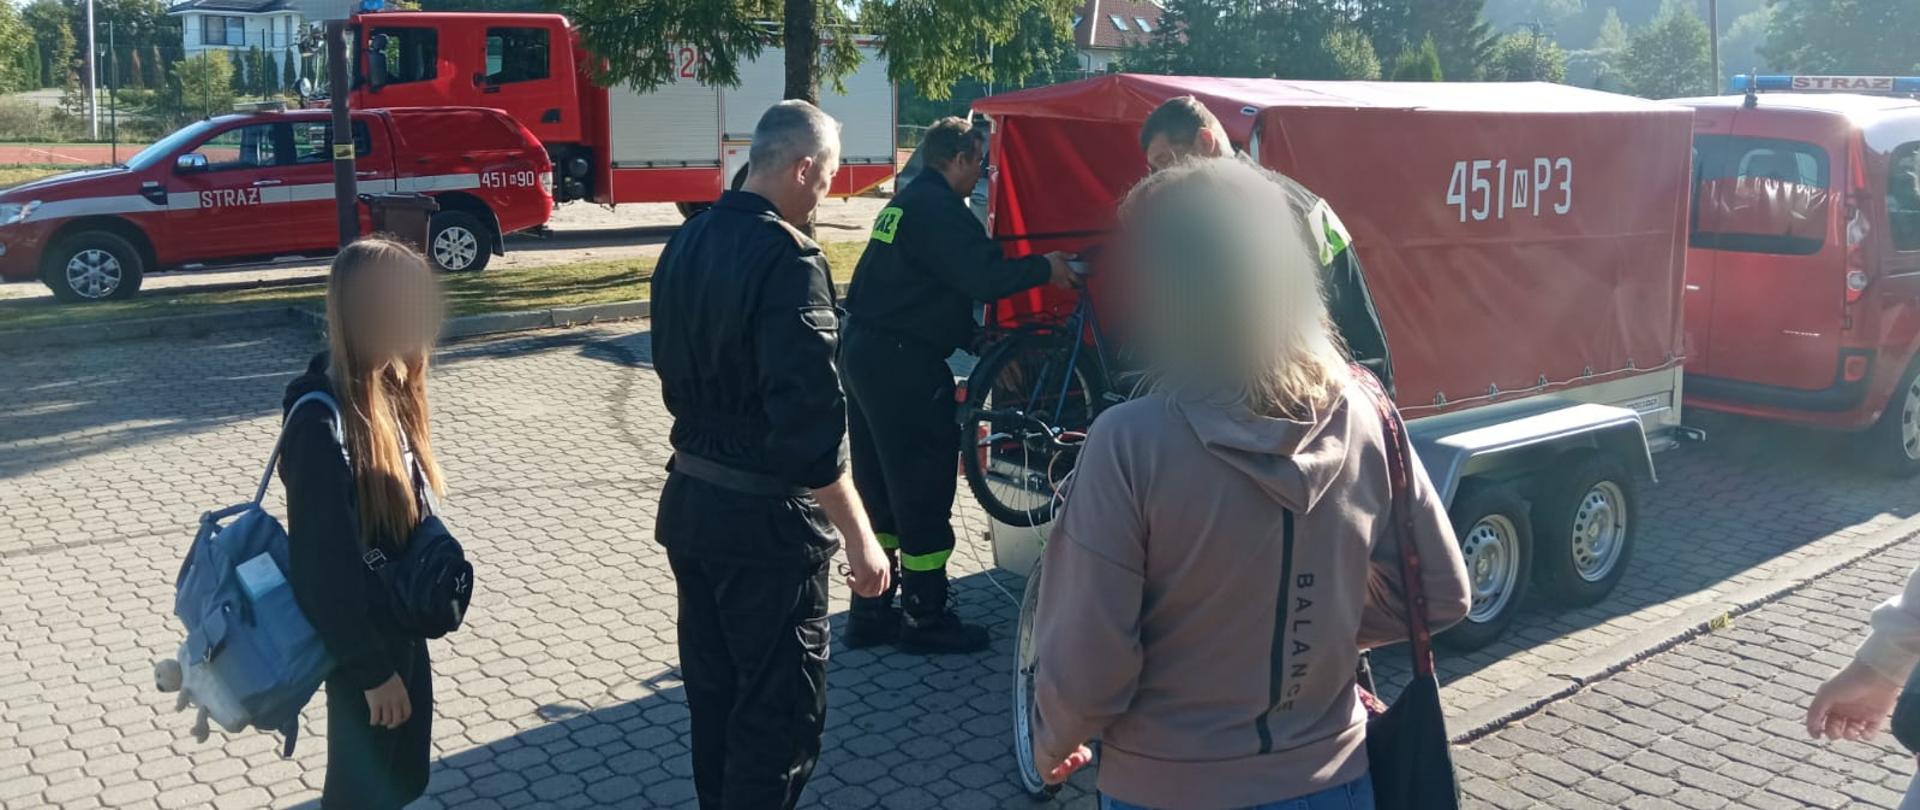 Zdjęcie przedstawia strażaków Komendy Powiatowej Państwowej Straży Pożarnej w Gołdapi, którzy udzielają pomocy w transporcie uchodźcom z Ukrainy (w tym pakowanie bagażów) przy użyciu pojazdów pożarniczych